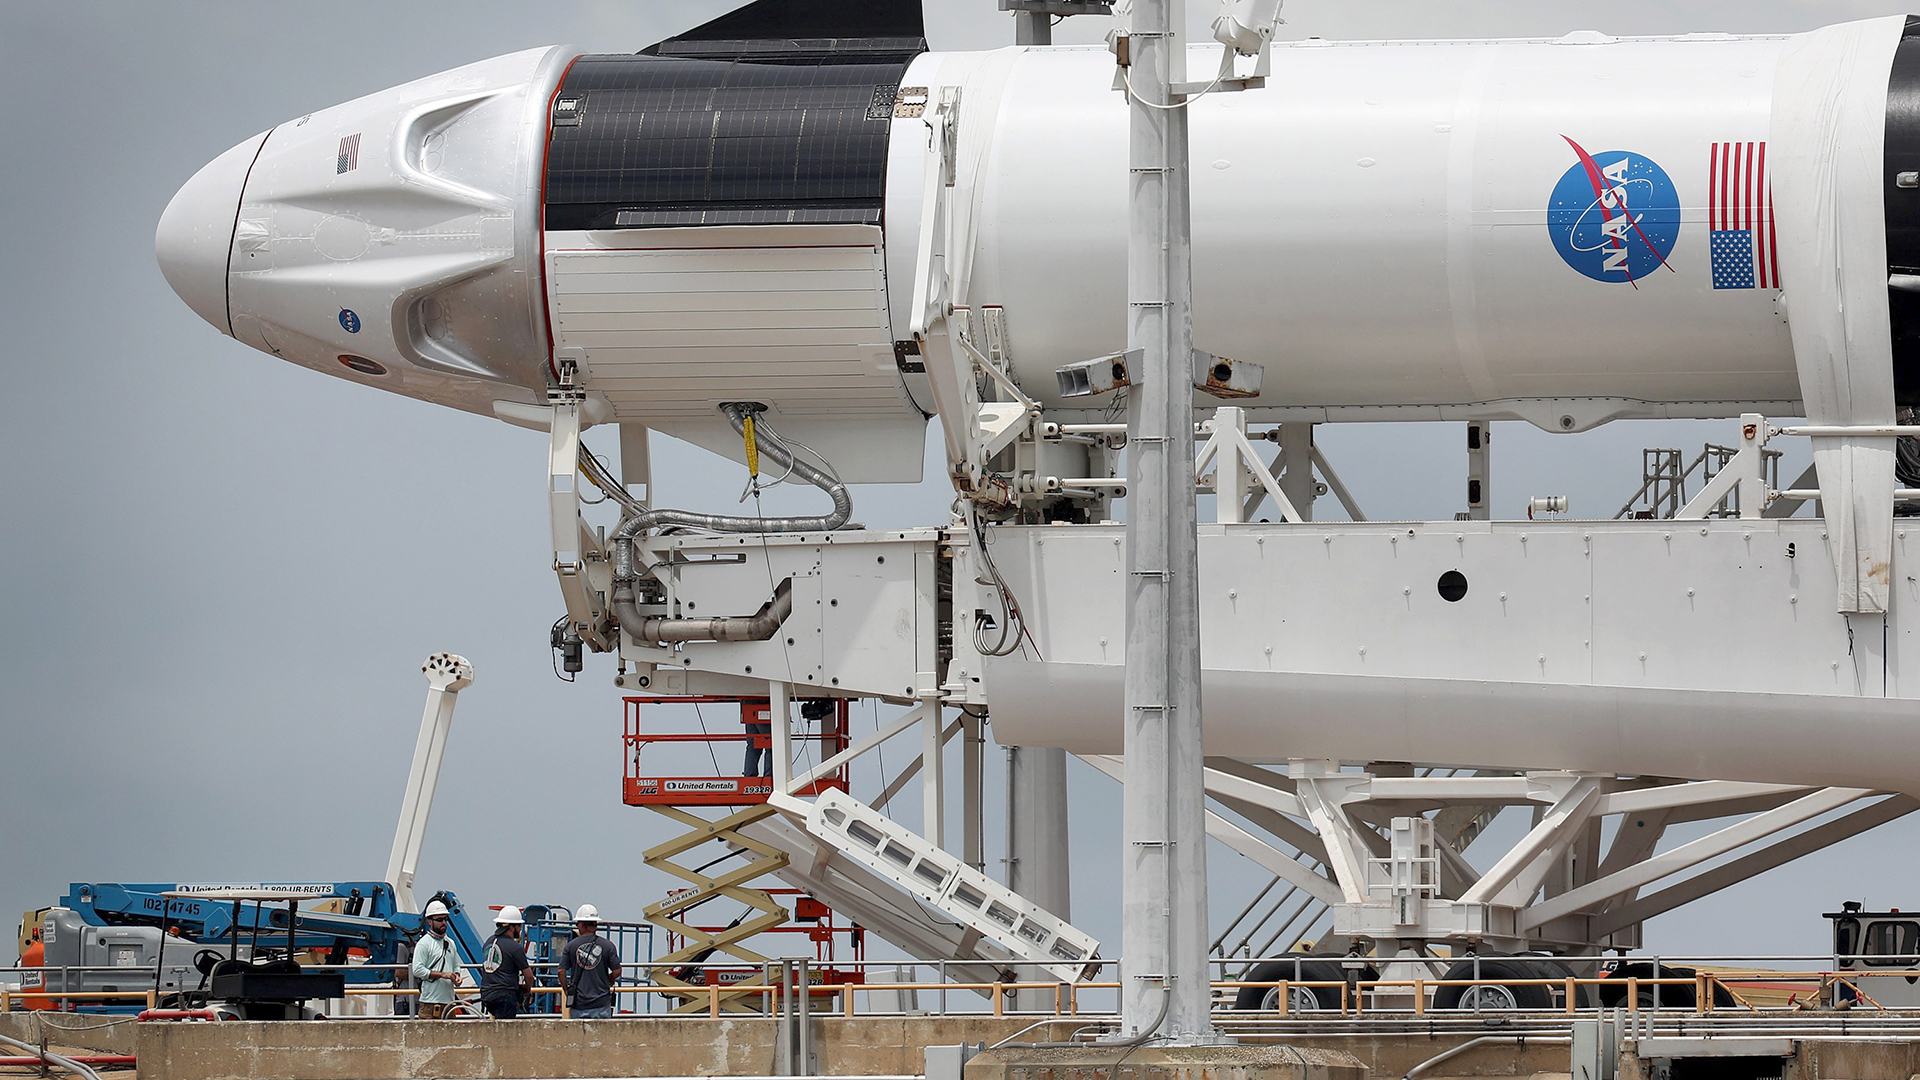 Arbeiter bereiten die Rakete SpaceX Falcon 9 mit dem Raumschiff Crew Dragon für den  geplanten Start von der Startrampe im Kennedy Space Center in Cape Canaveral, Florida, vor.  | AFP